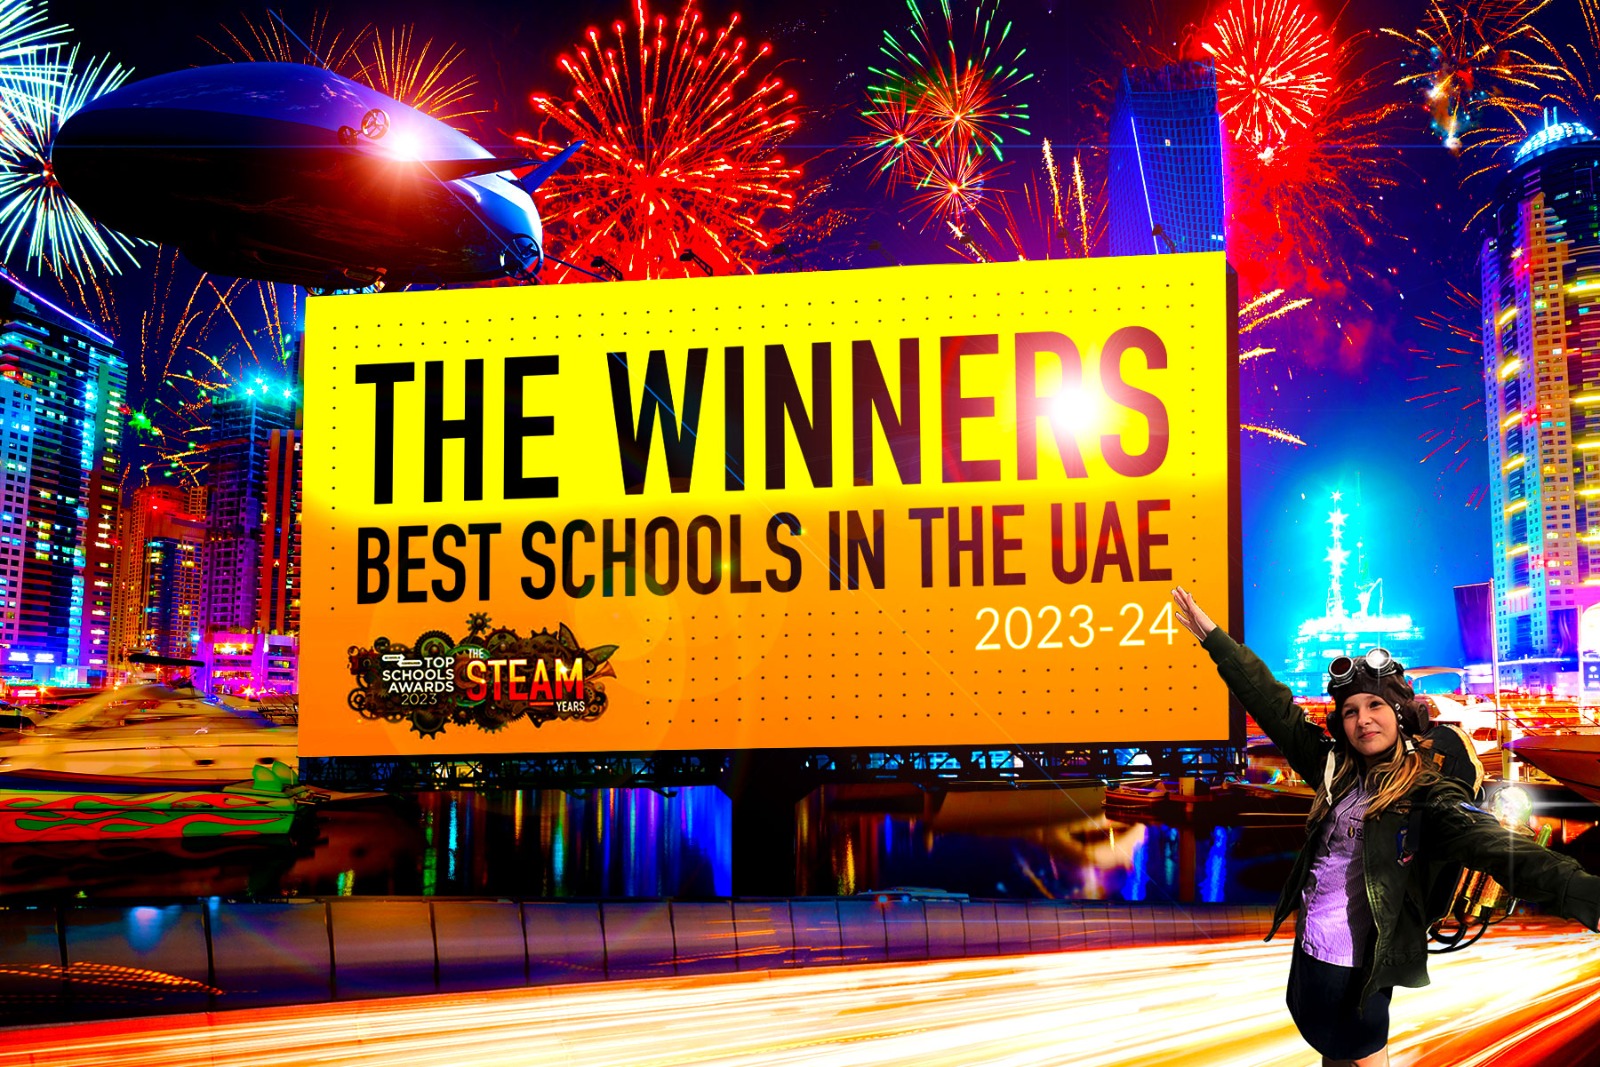 The Best Schools in Dubai. The Best Schools in Abu Dhabi. The Best Schools in the UAE. Official. The Top Schools Awards 2023 - 2024 Revealed.